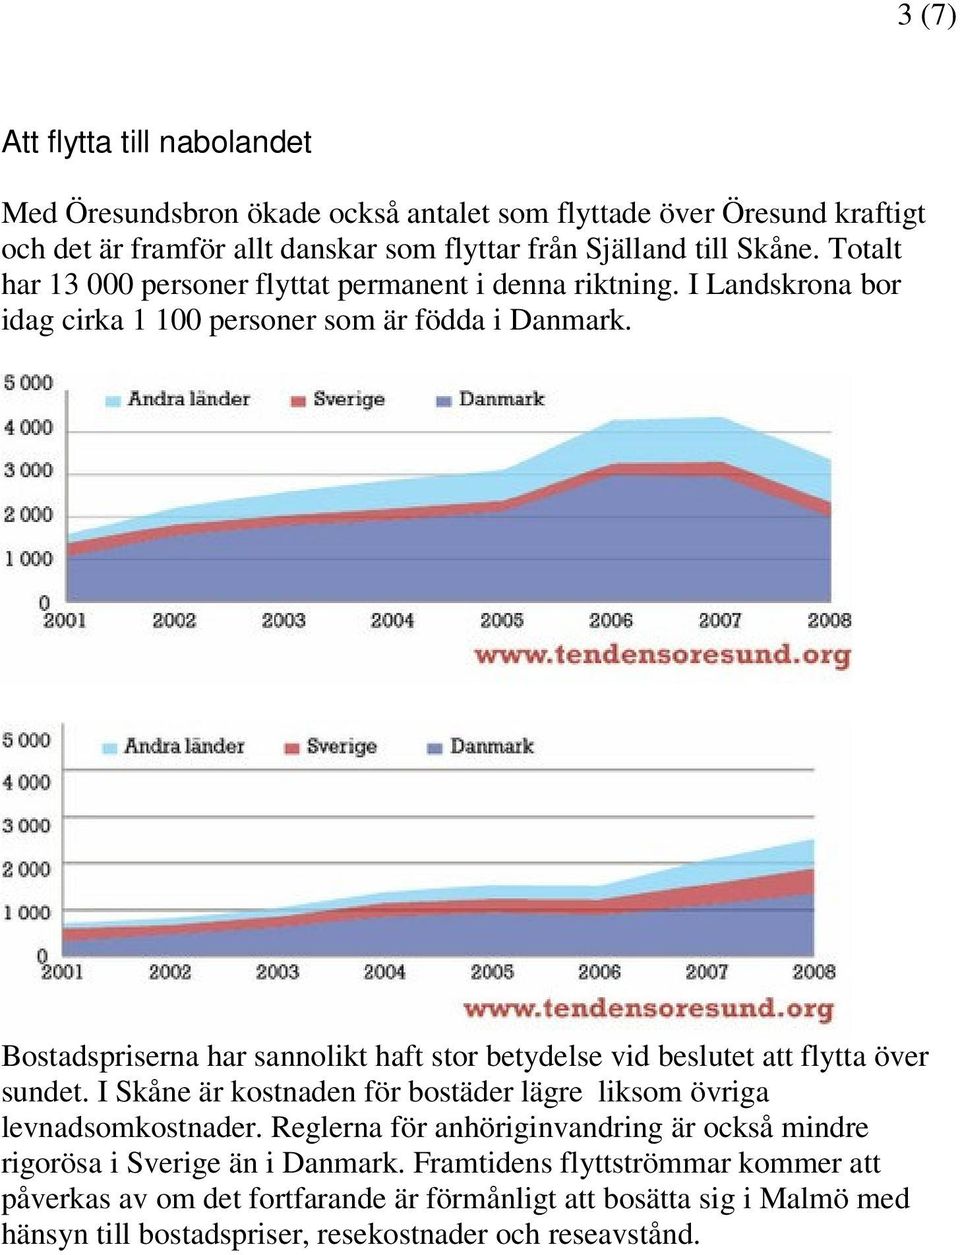 Bostadspriserna har sannolikt haft stor betydelse vid beslutet att flytta över sundet. I Skåne är kostnaden för bostäder lägre liksom övriga levnadsomkostnader.